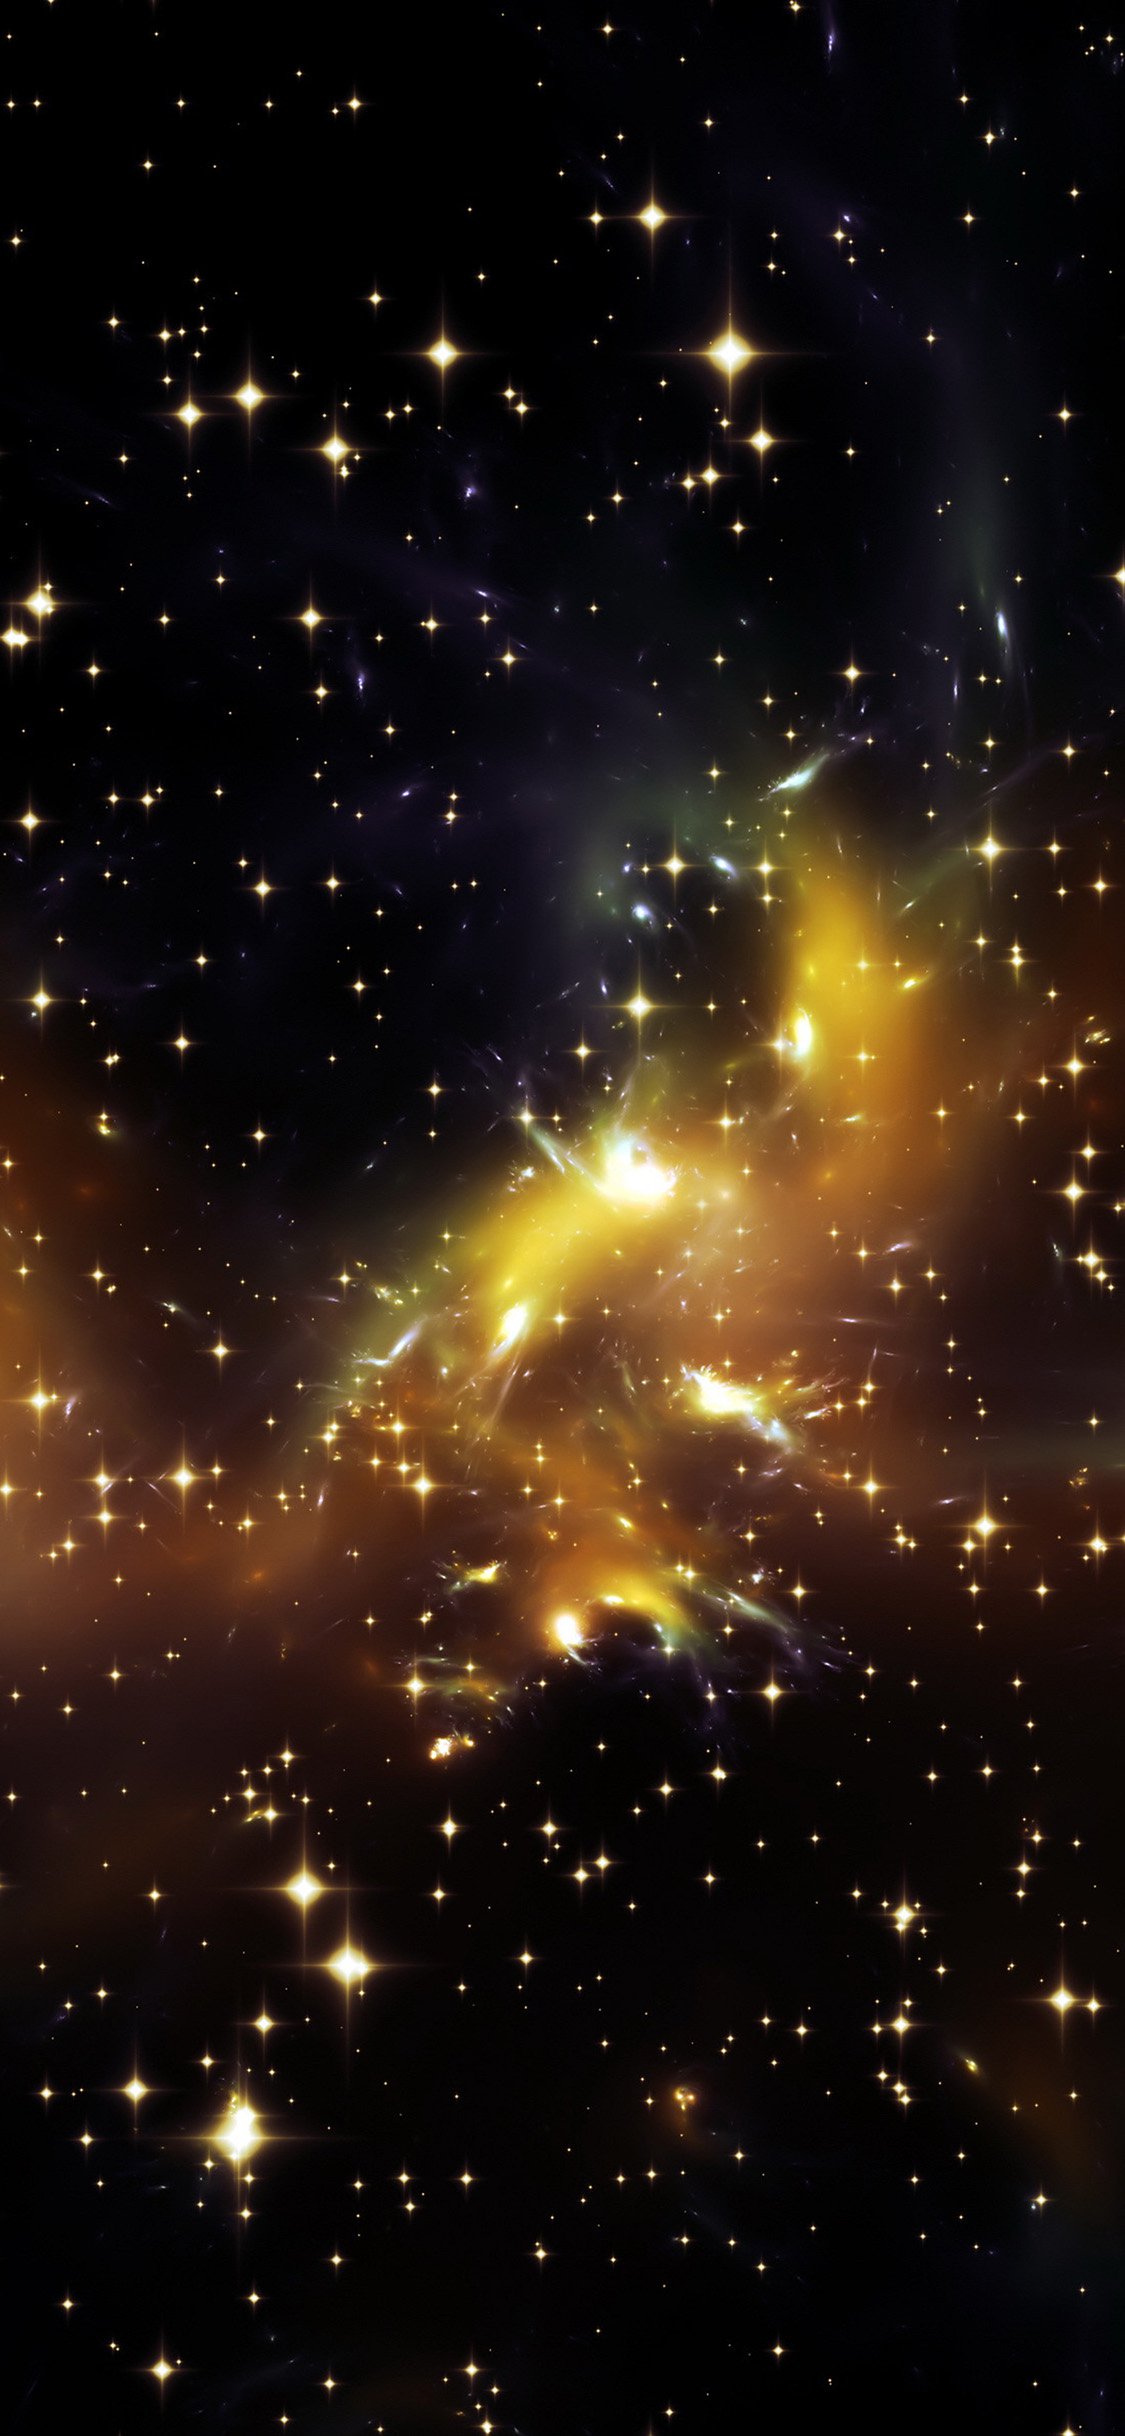 Galaxy nebula wallpaper